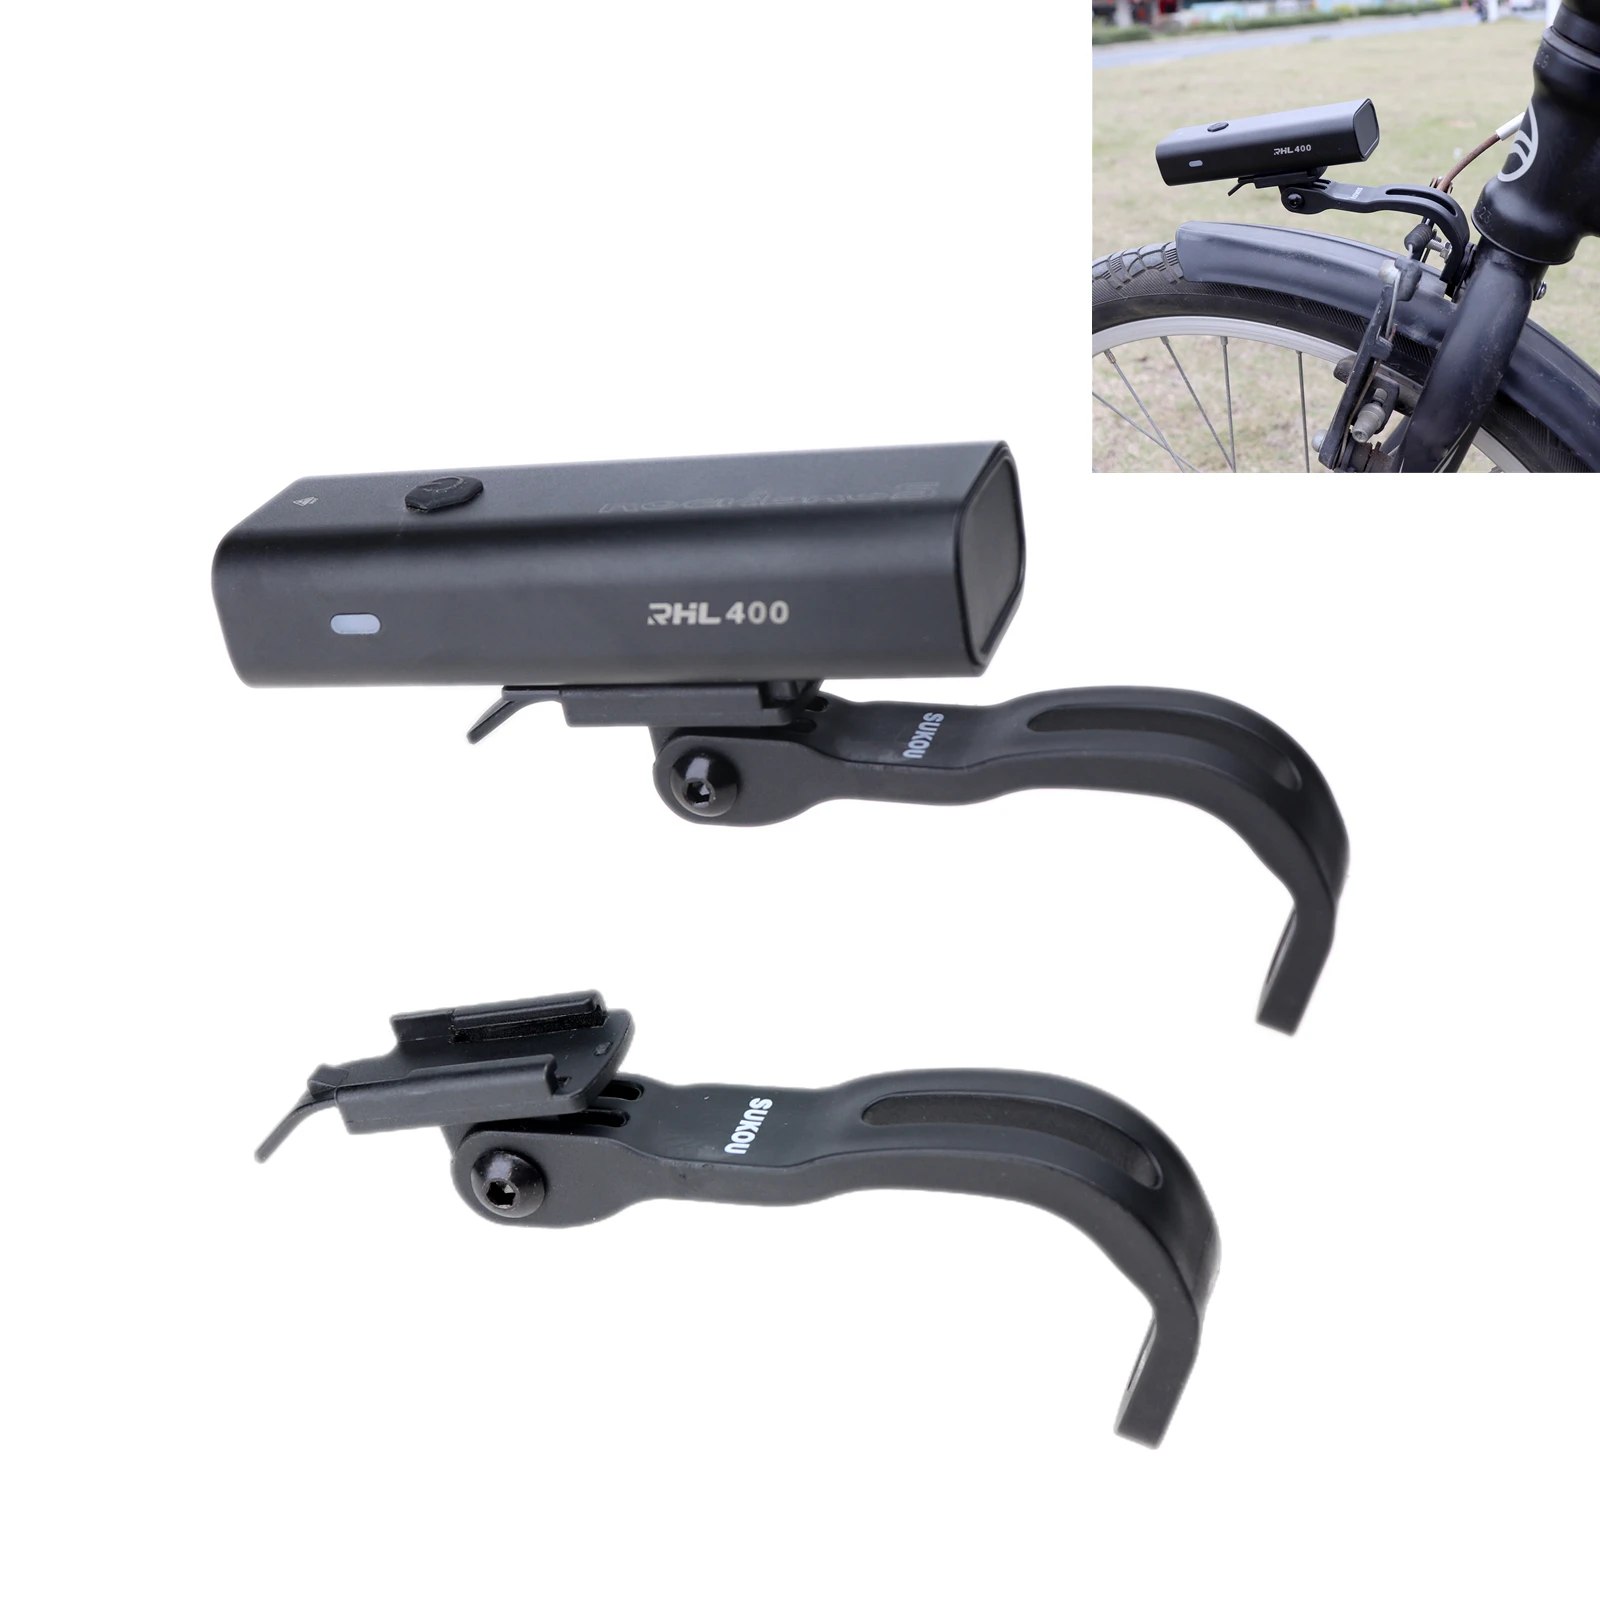 

Кронштейн для велосипесветильник, складной кронштейн для велосипедной фары, кронштейн-держатель для лампы ROCKBROS YQ200 400 RHL400 600